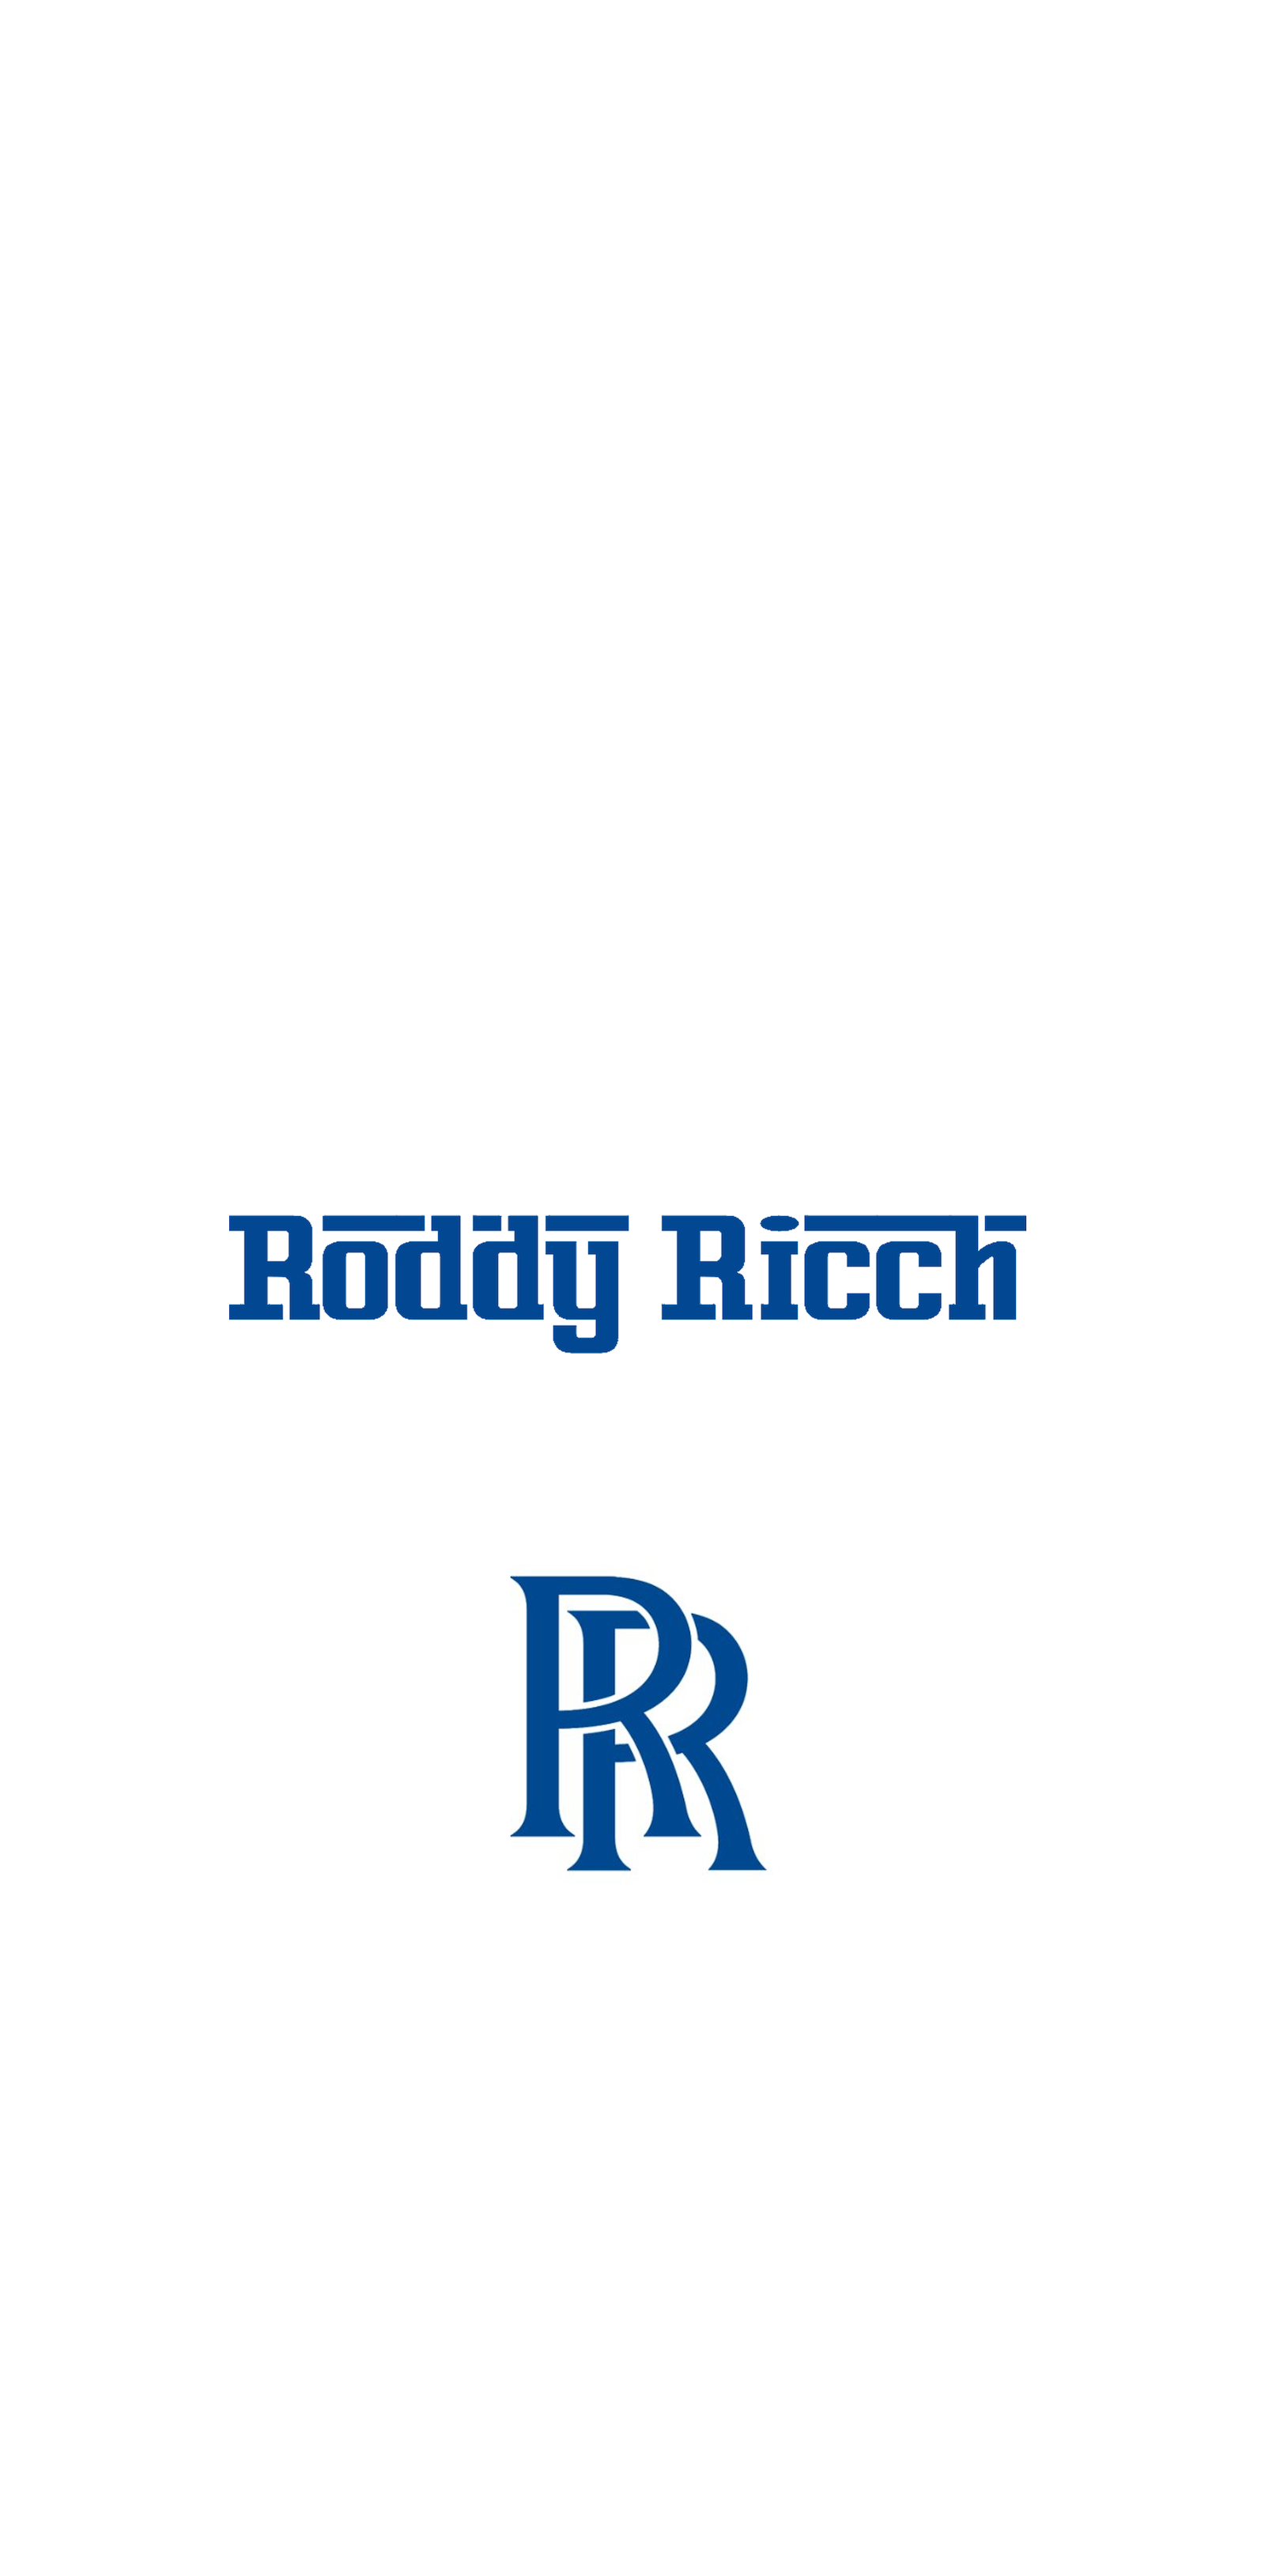 Roddy Ricch Wallpaper. Music videos .com